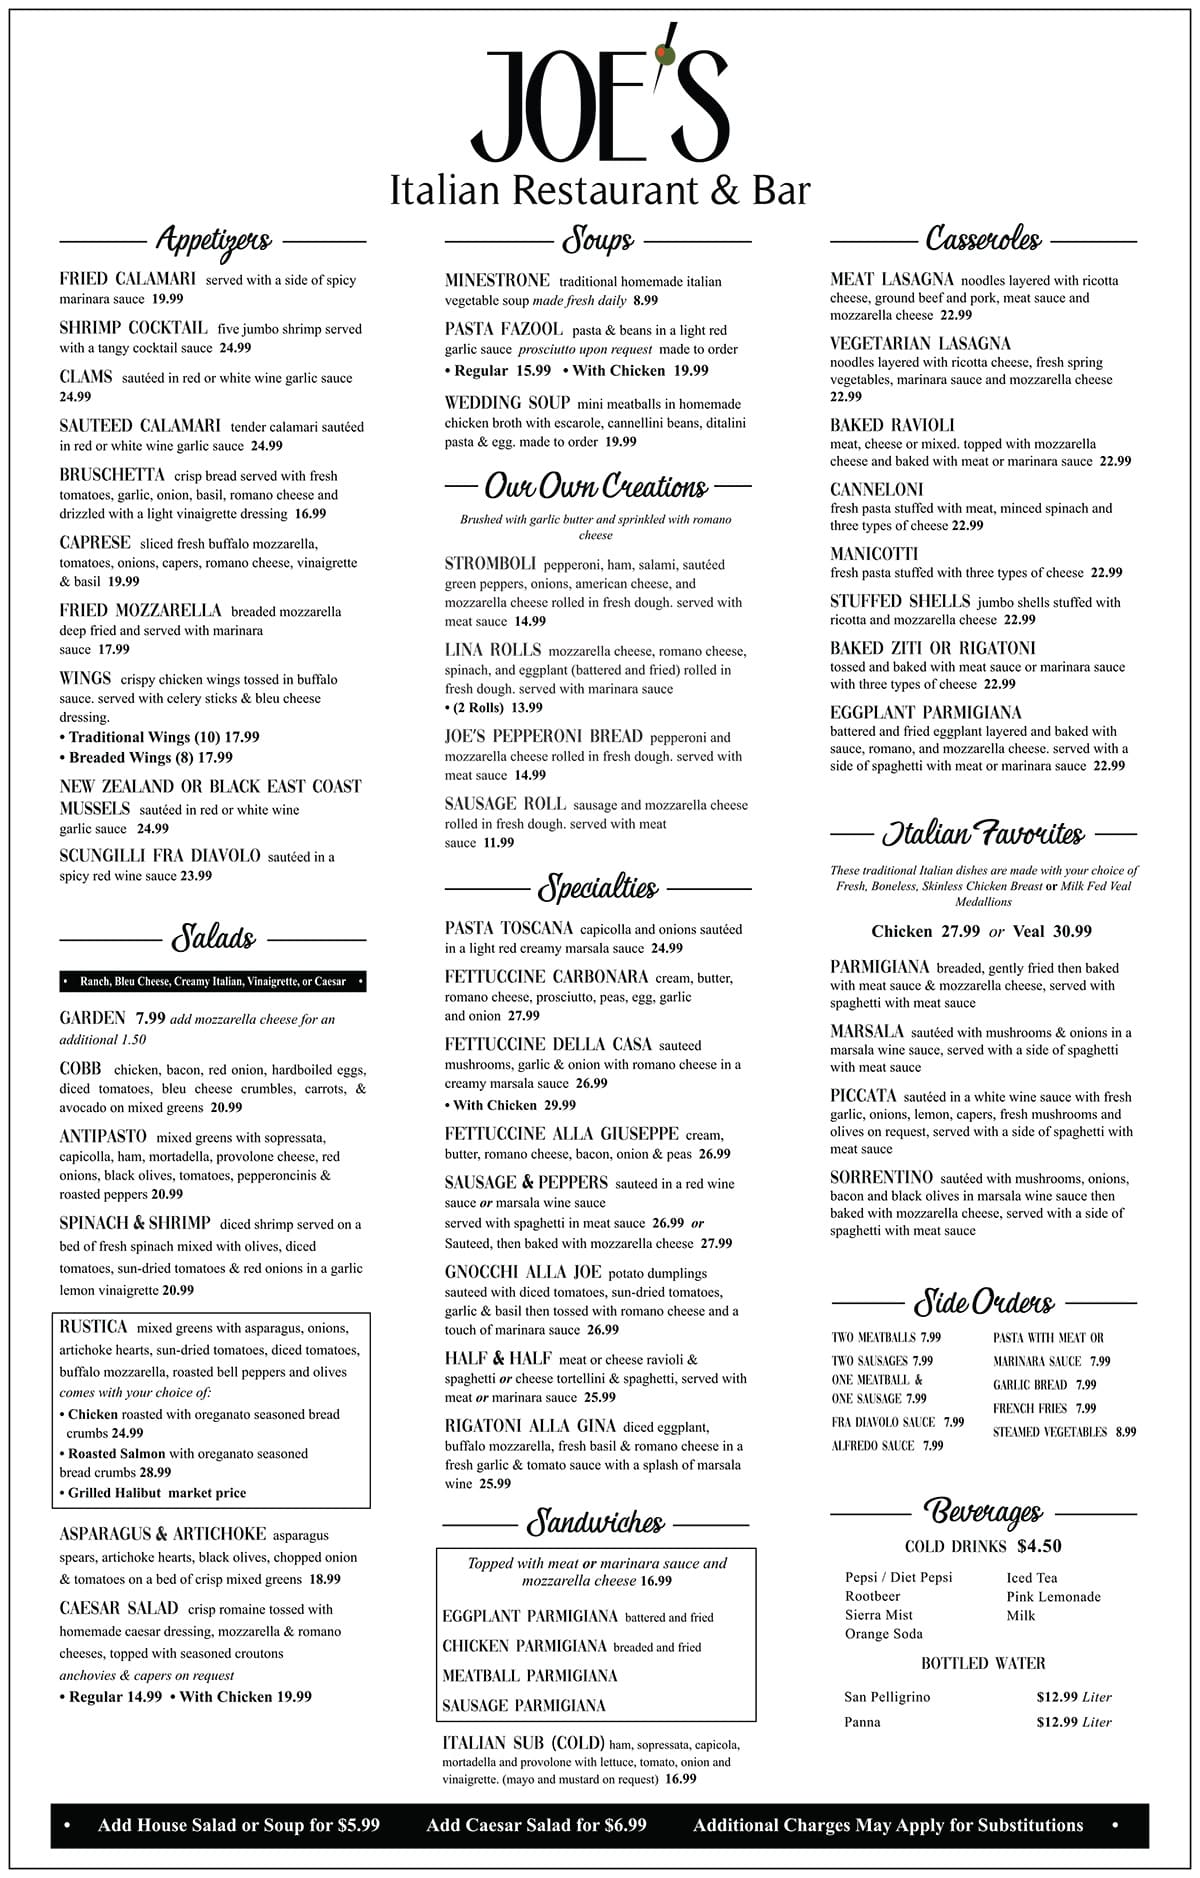 Joe's Italian restaurant menu